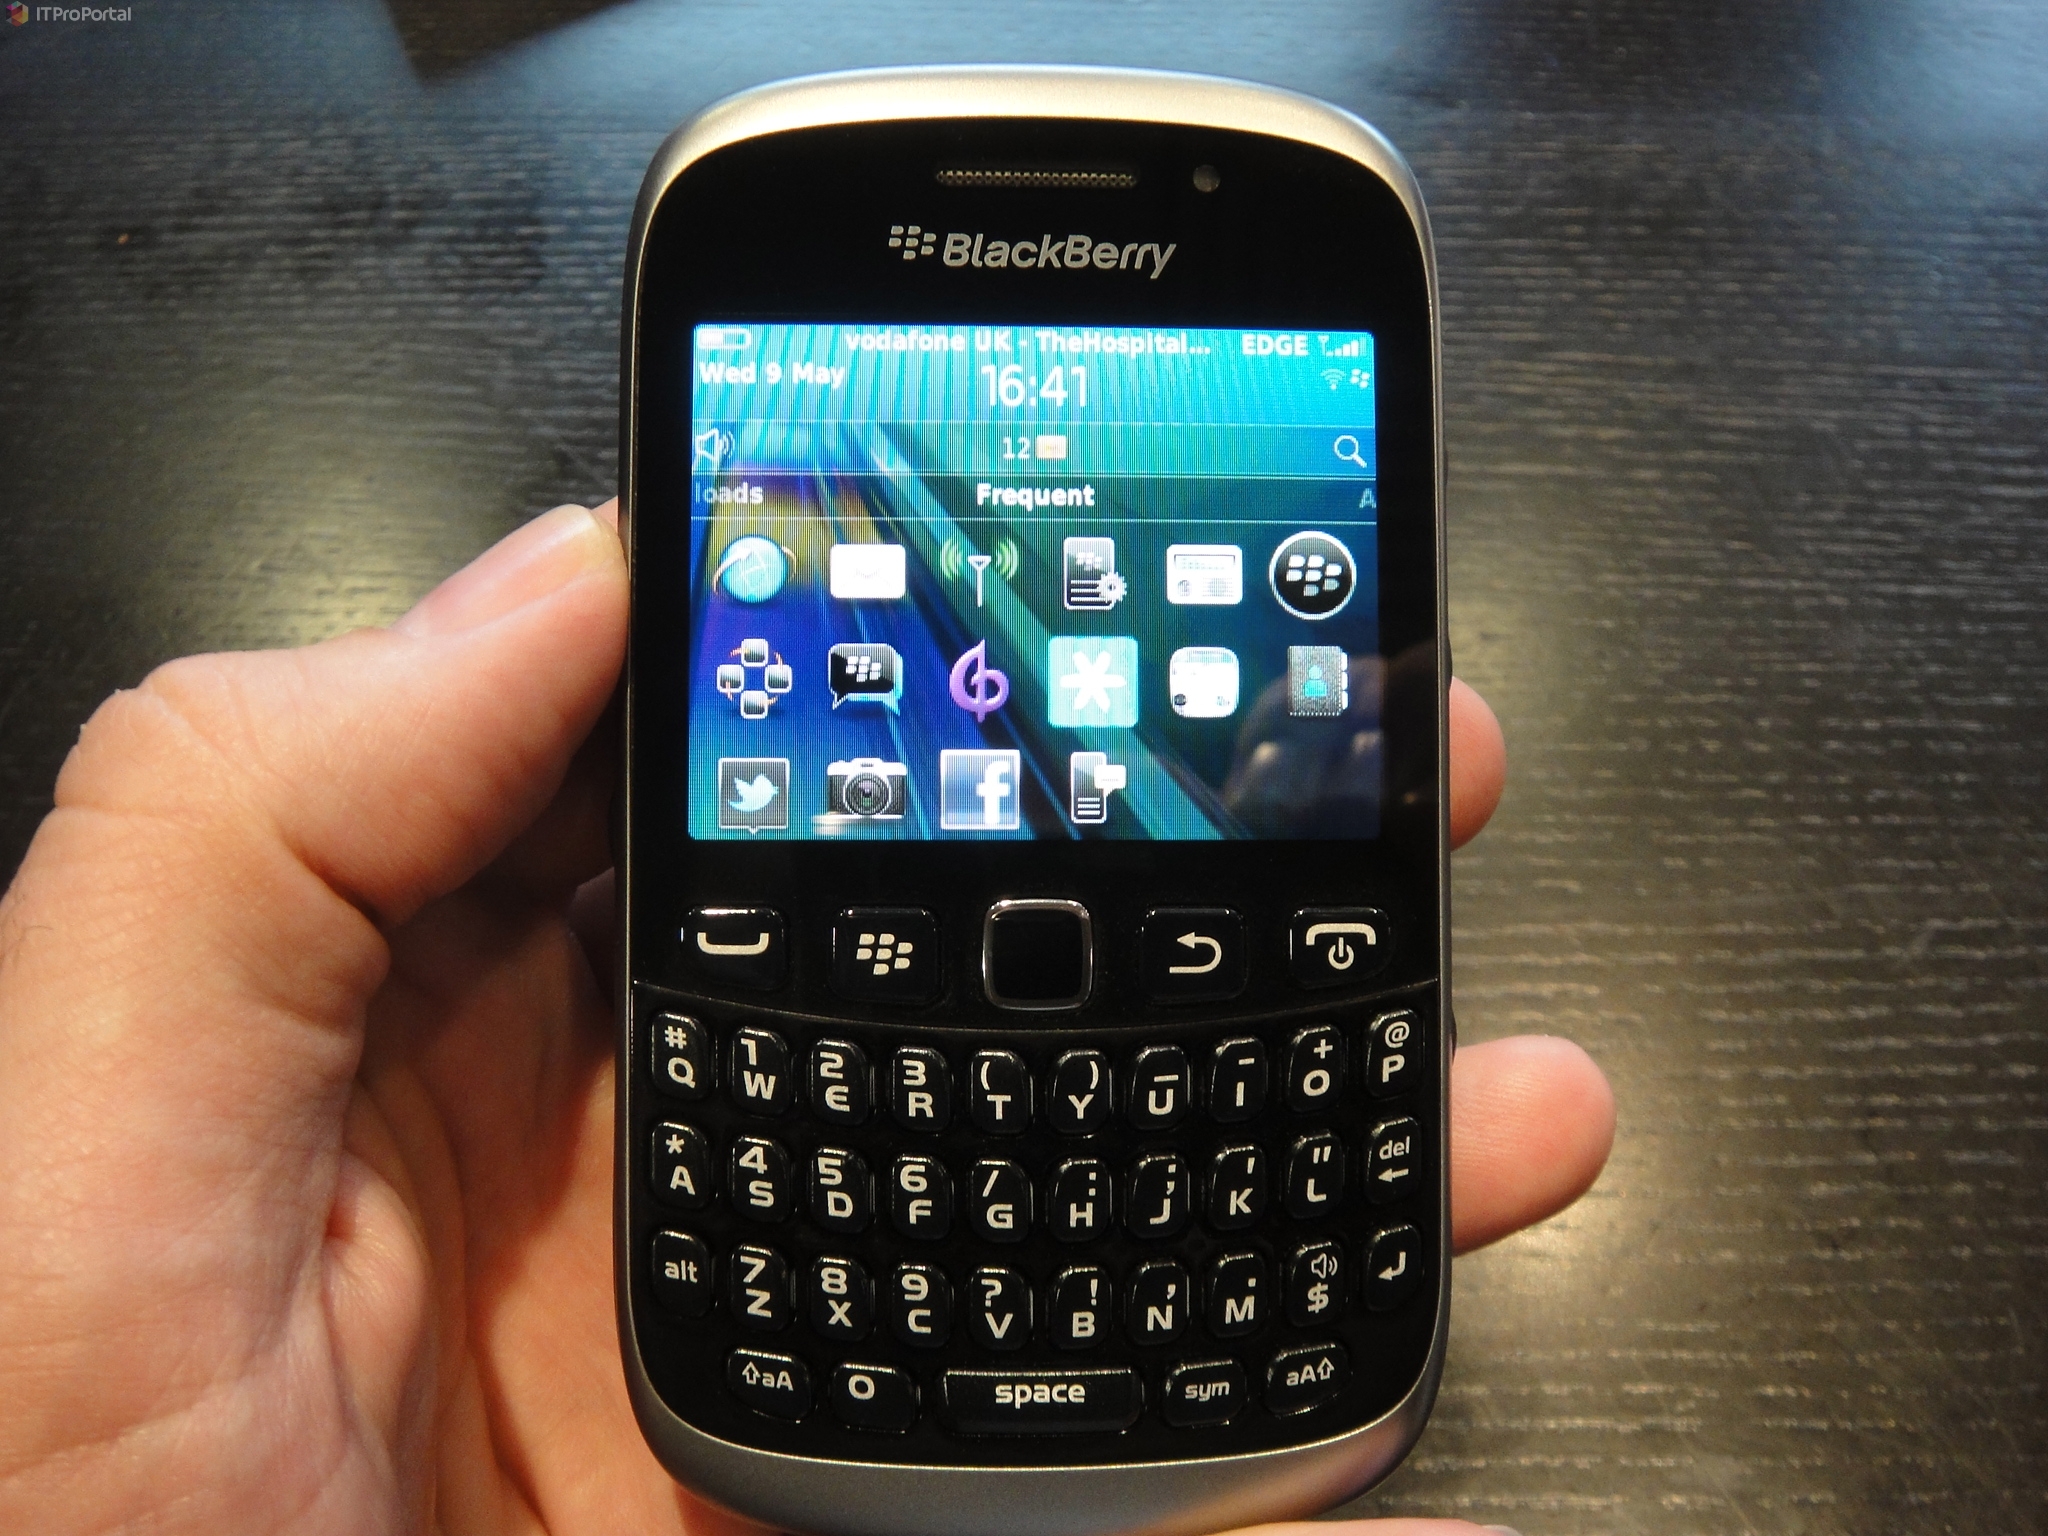 Quel est le meilleur modèle de BlackBerry ?